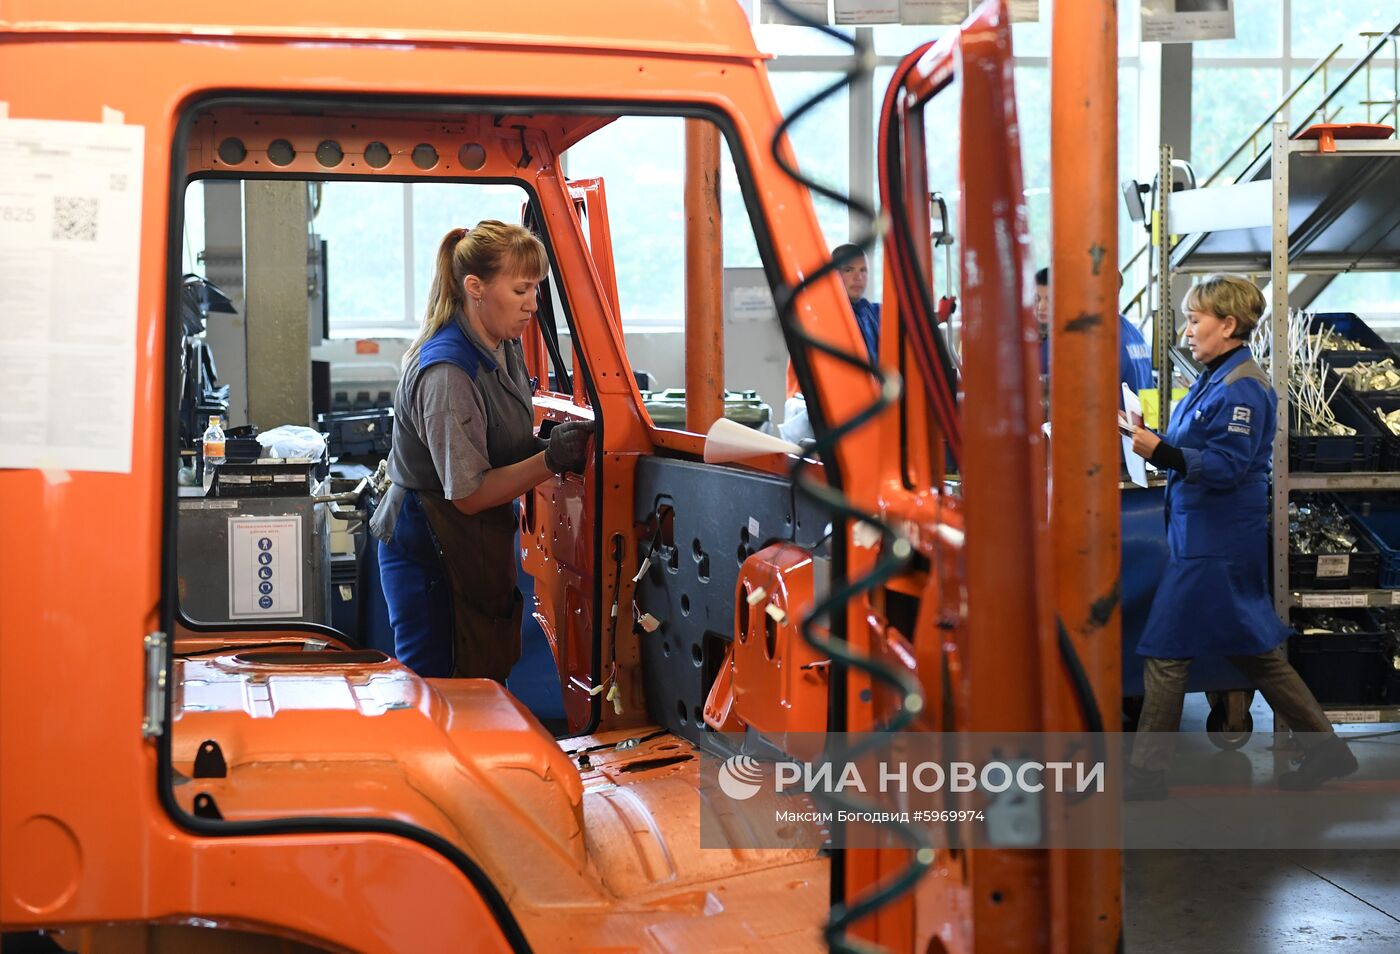 Автомобильный завод "КамАЗ" в Татарстане